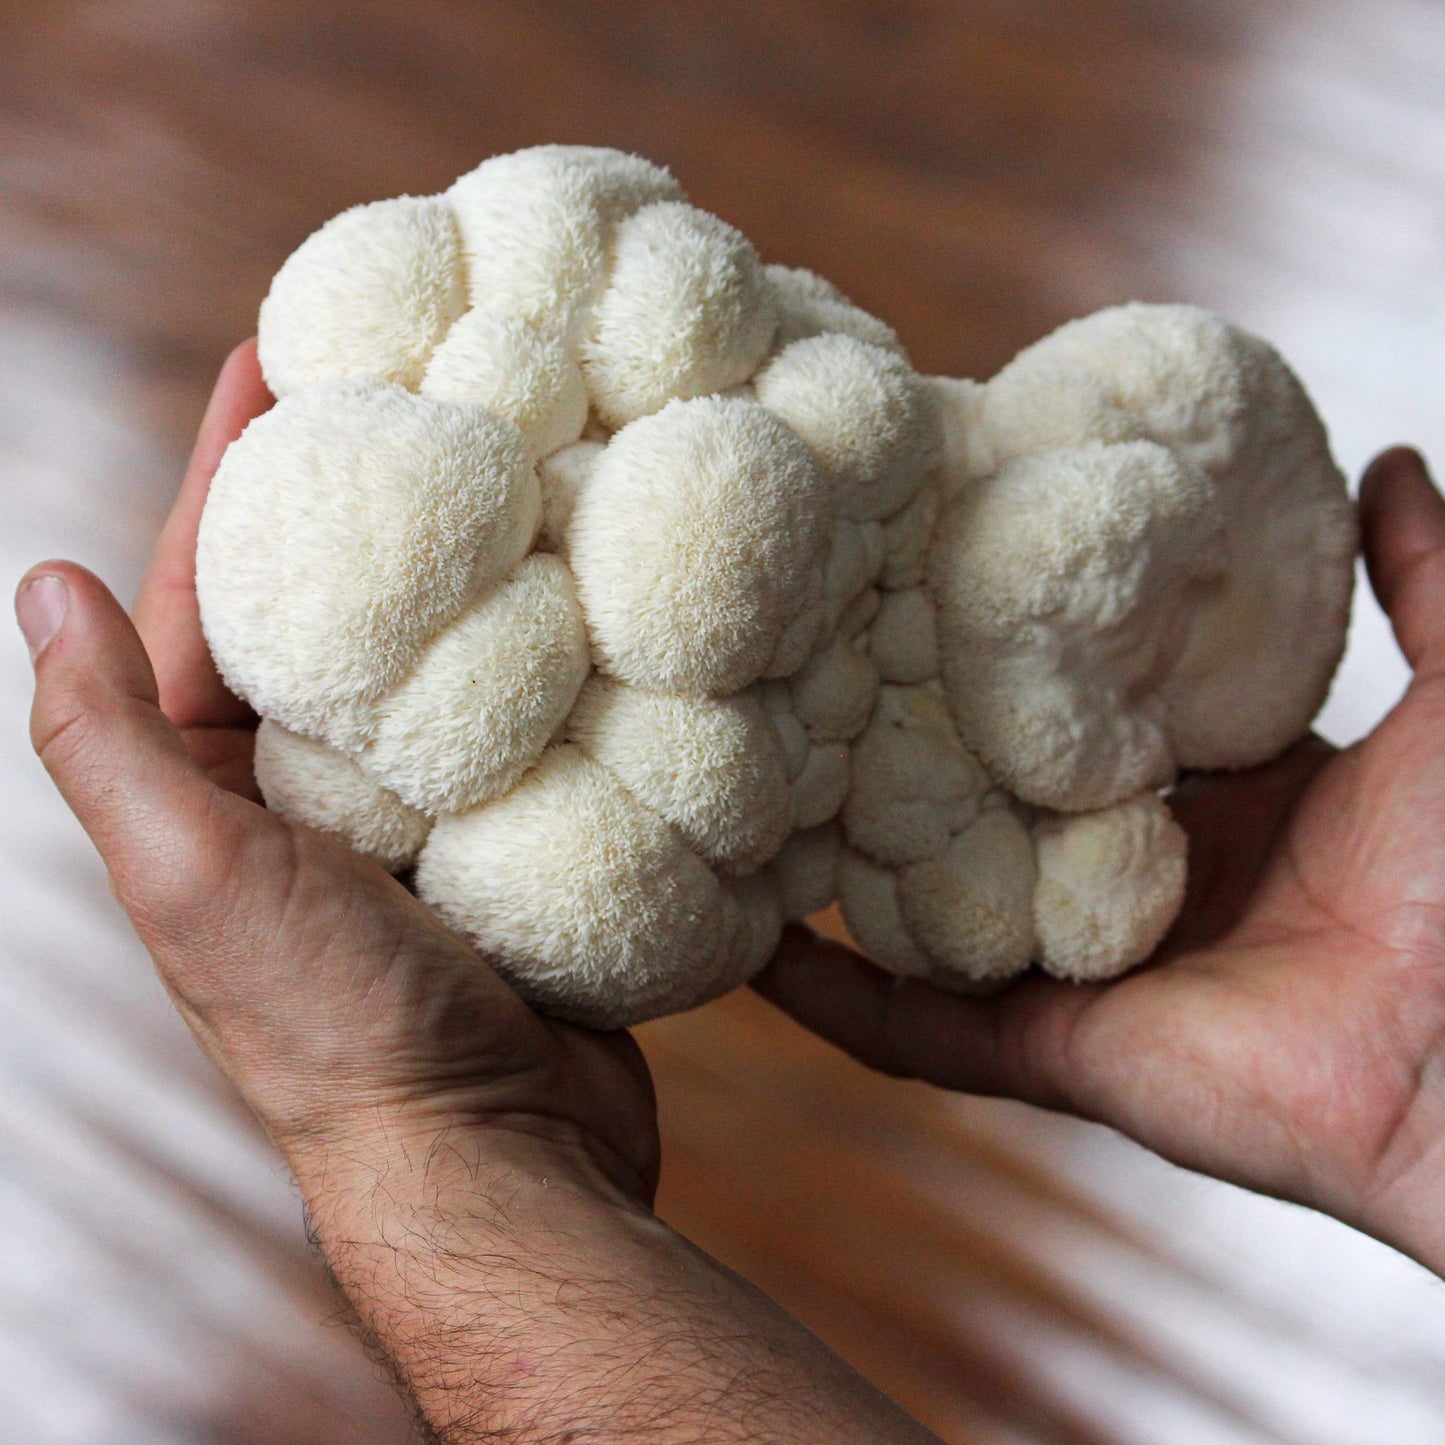 Organic Lion's Mane ‘Spray & Grow’ Mushroom Growing Kit by North Spore